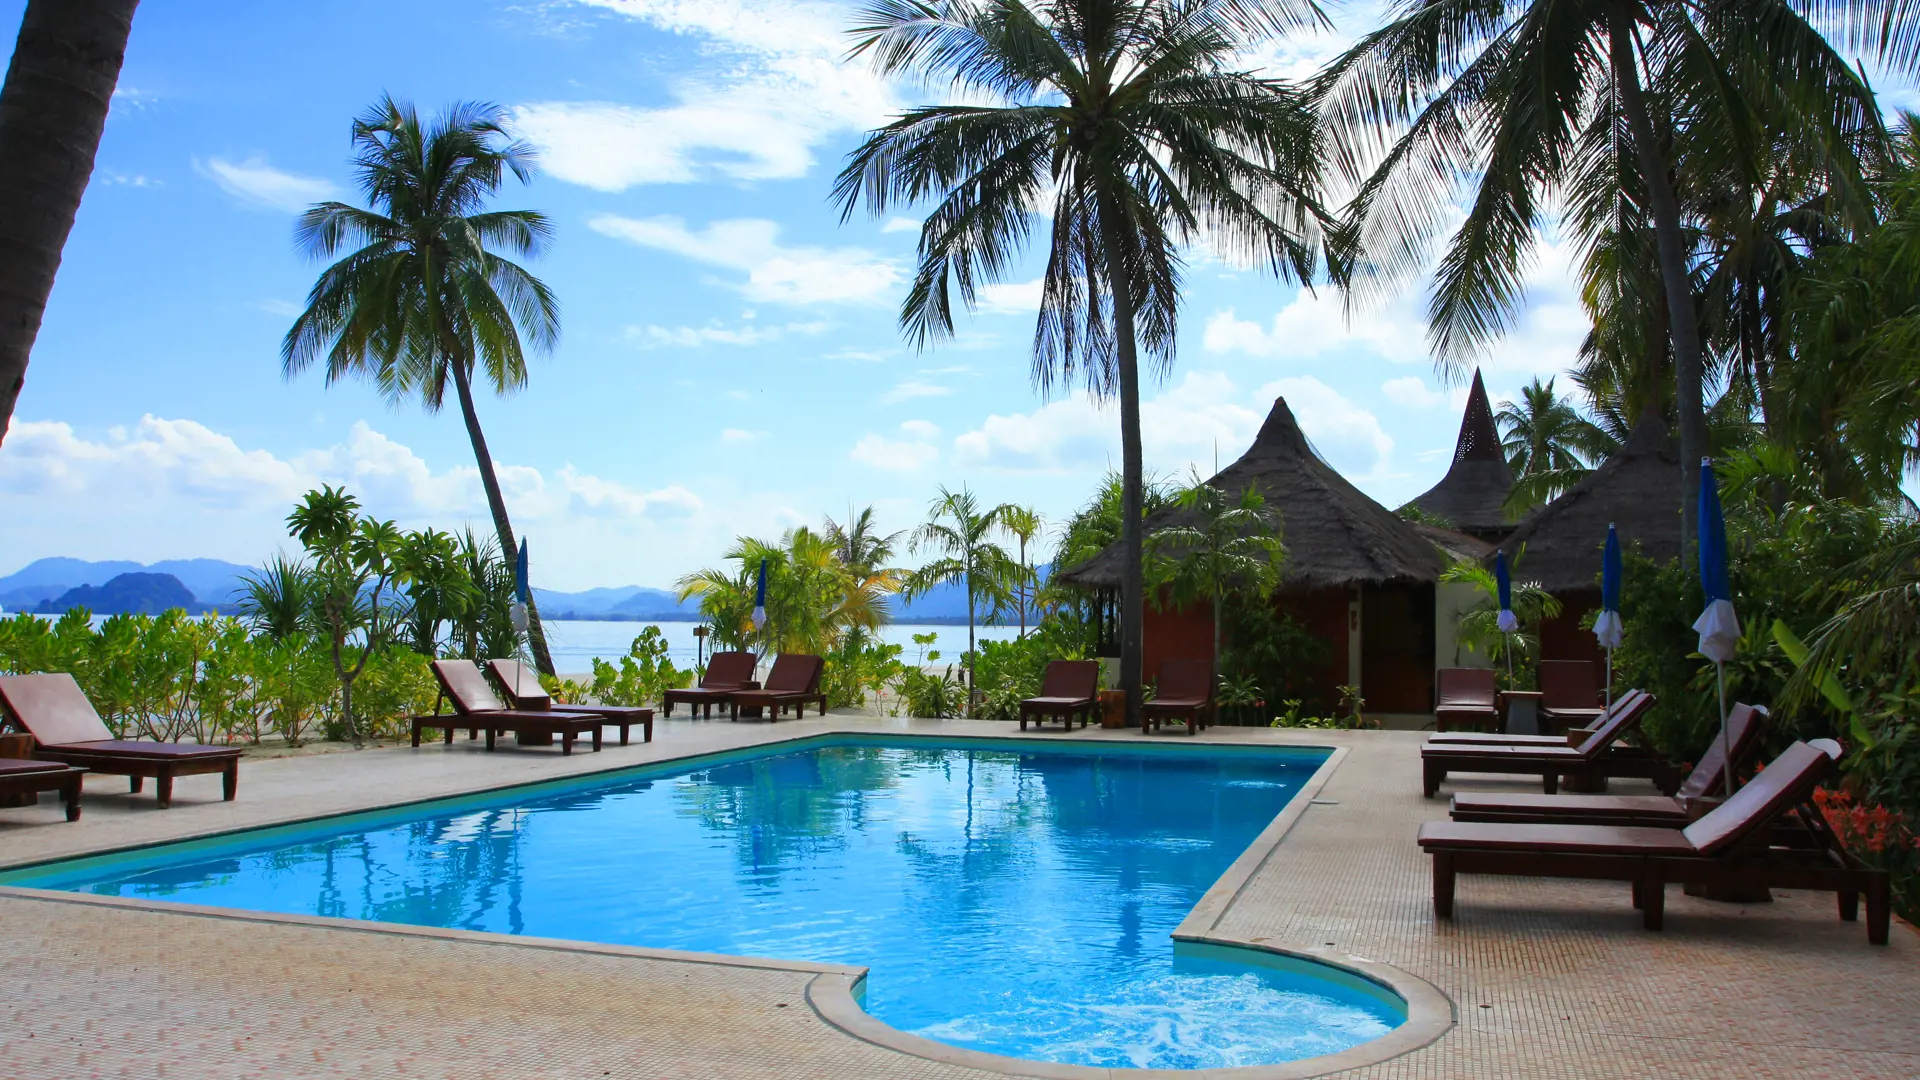 KOH MOOK - Selv om Sivalai Beach Resort ligger på en ø med flotte strande, så har resortet også en pool, Check Point Travel